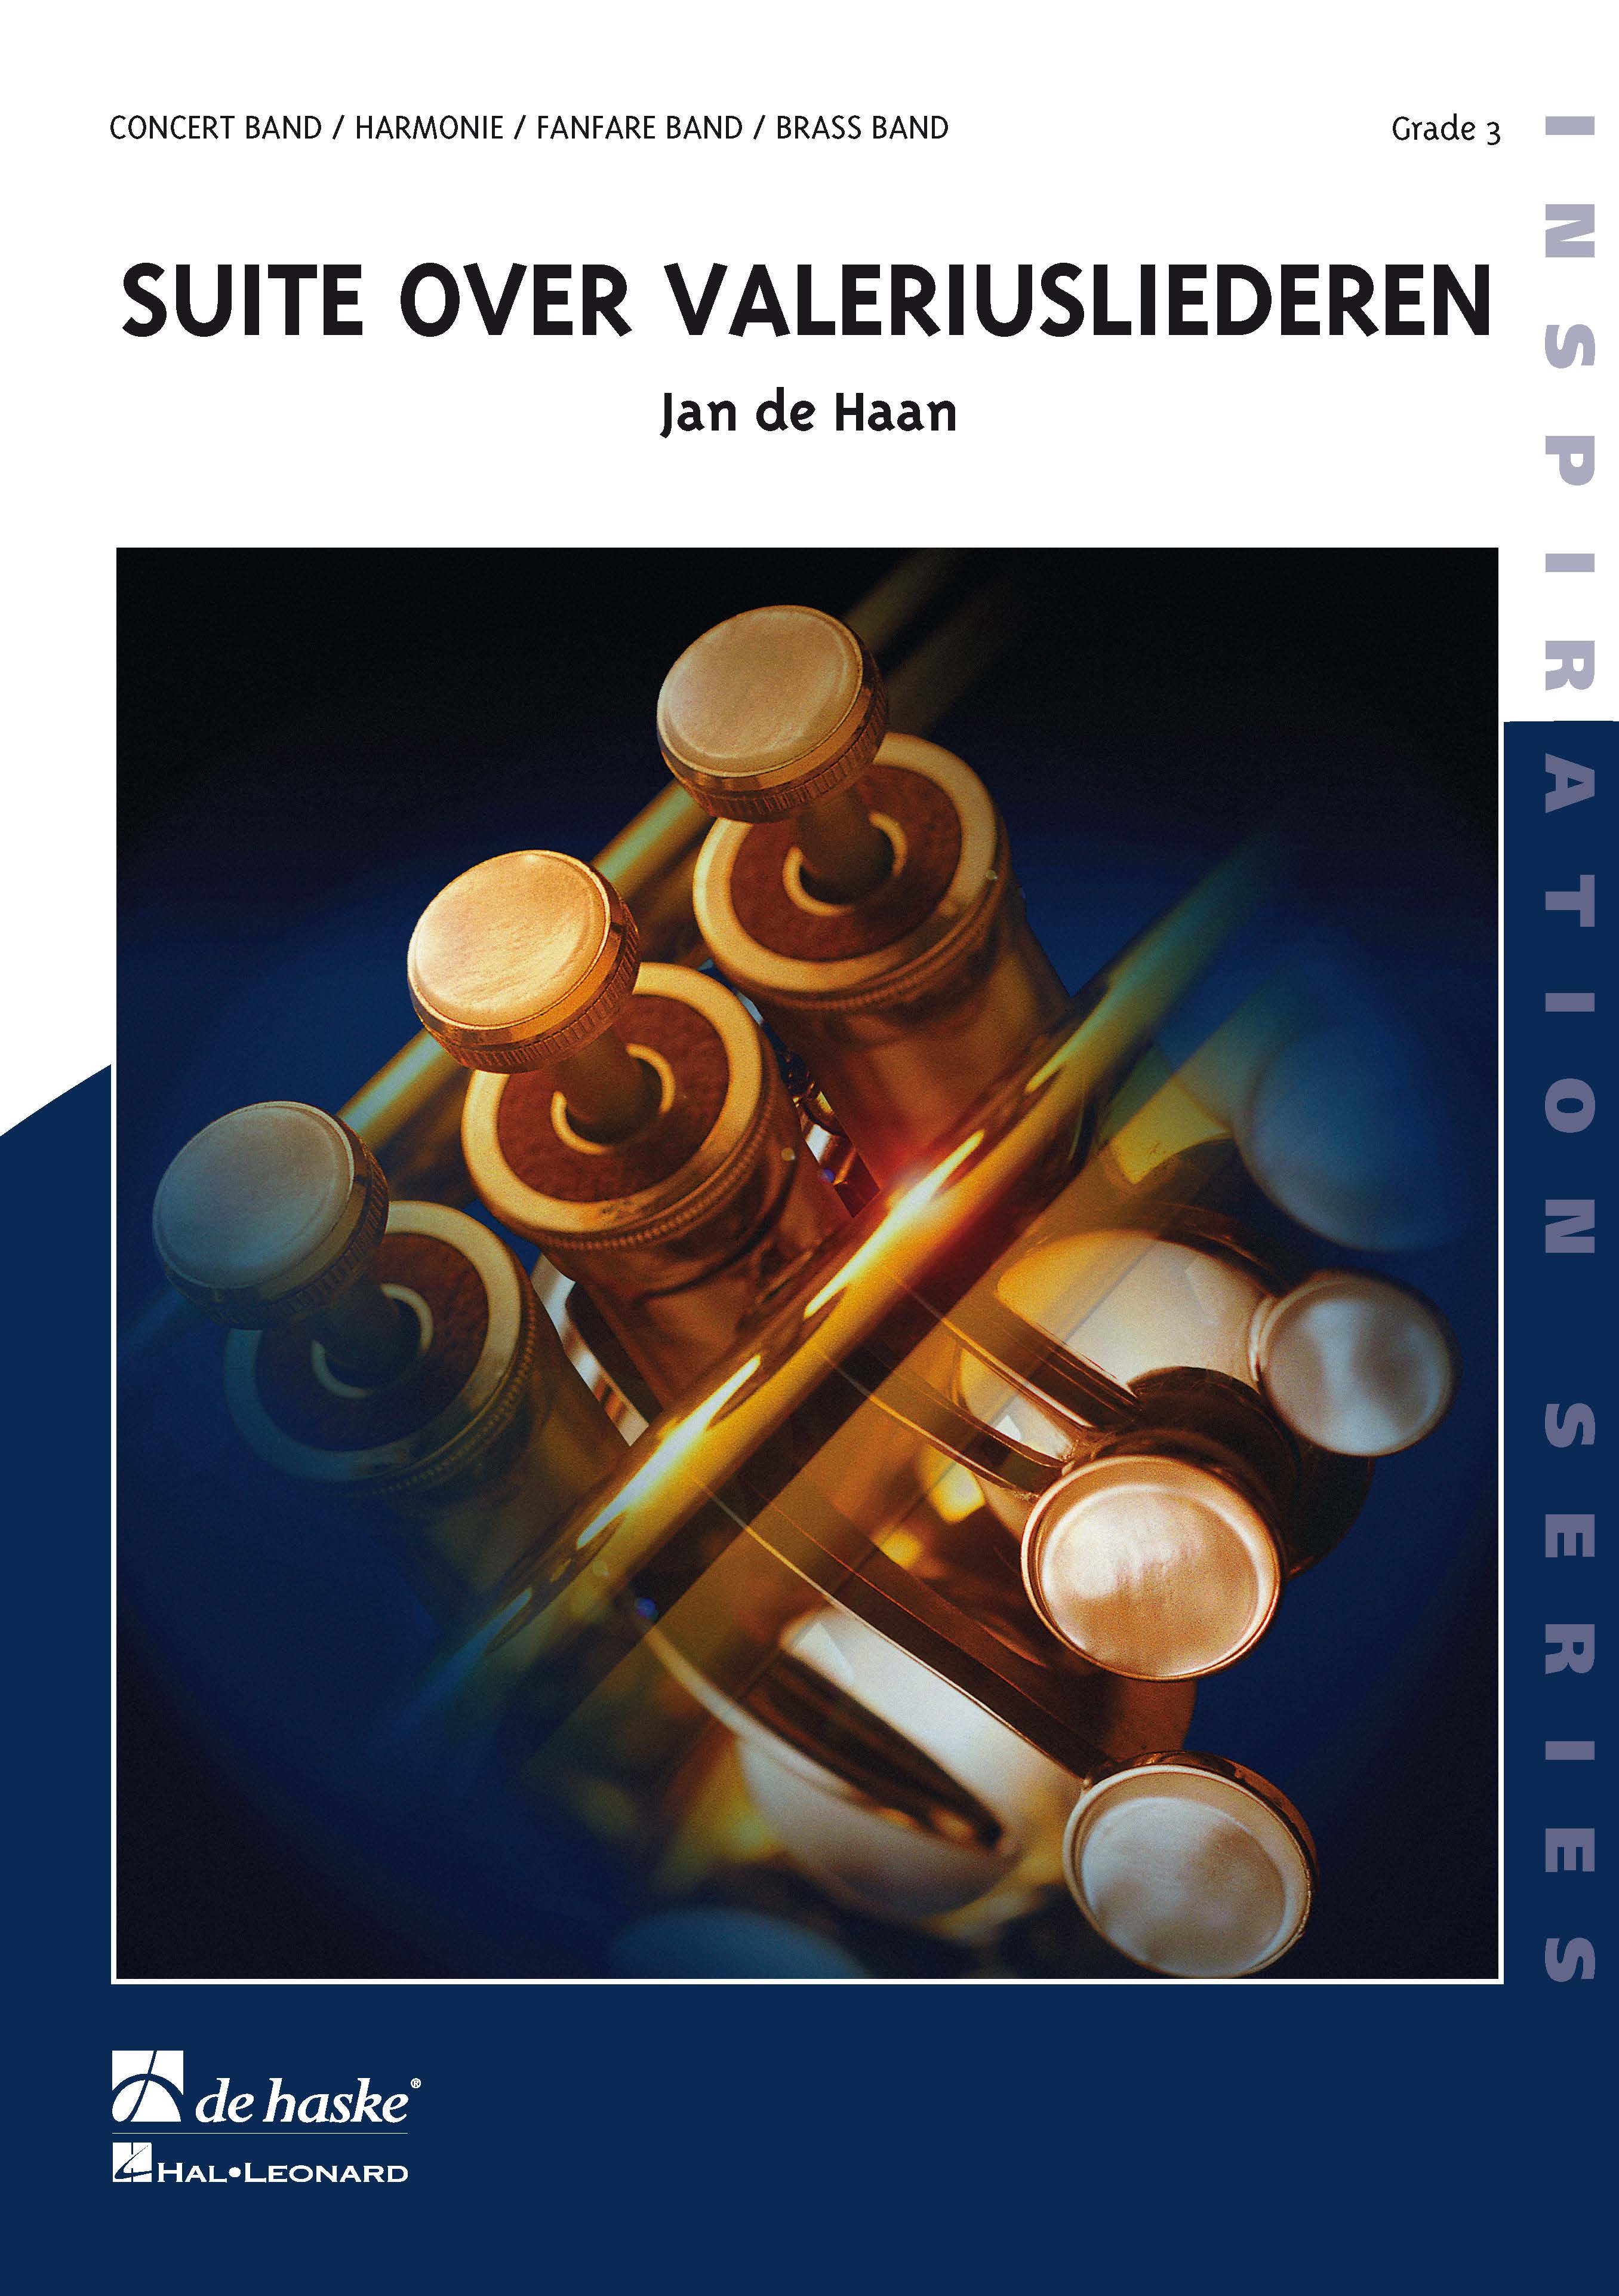 Jan de Haan: Suite over Valeriusliederen: Concert Band: Score & Parts